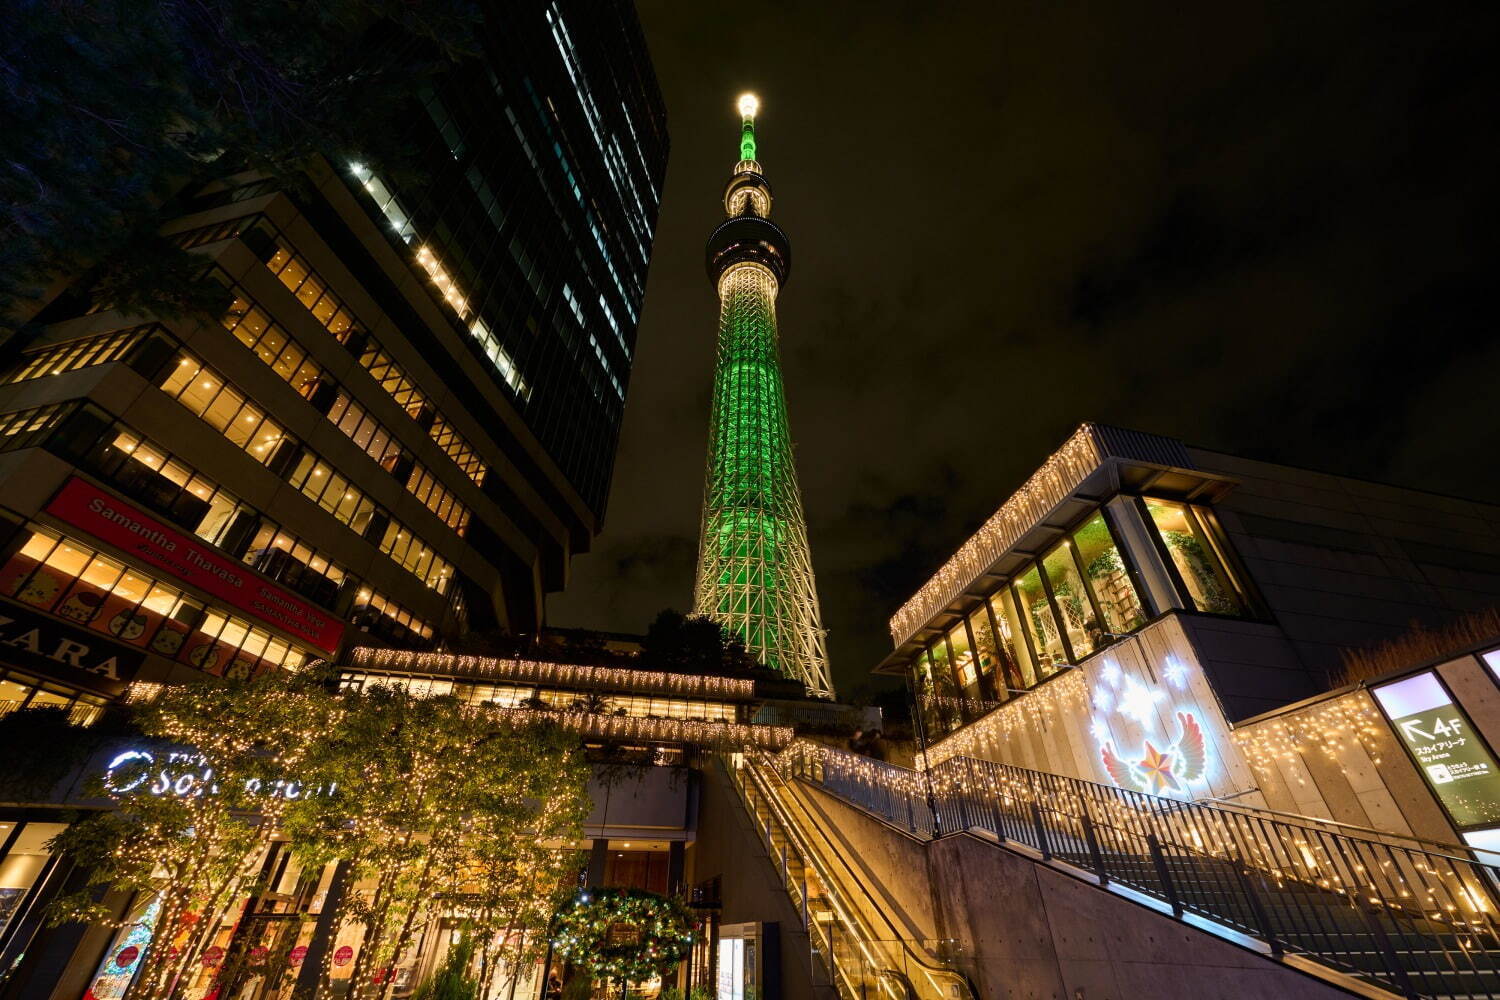 งานประดับไฟที่ Tokyo Skytree Town - การประดับไฟที่ใช้ไฟกว่า 460,000 ดวงและชมการฉายภาพสุดงดงาม